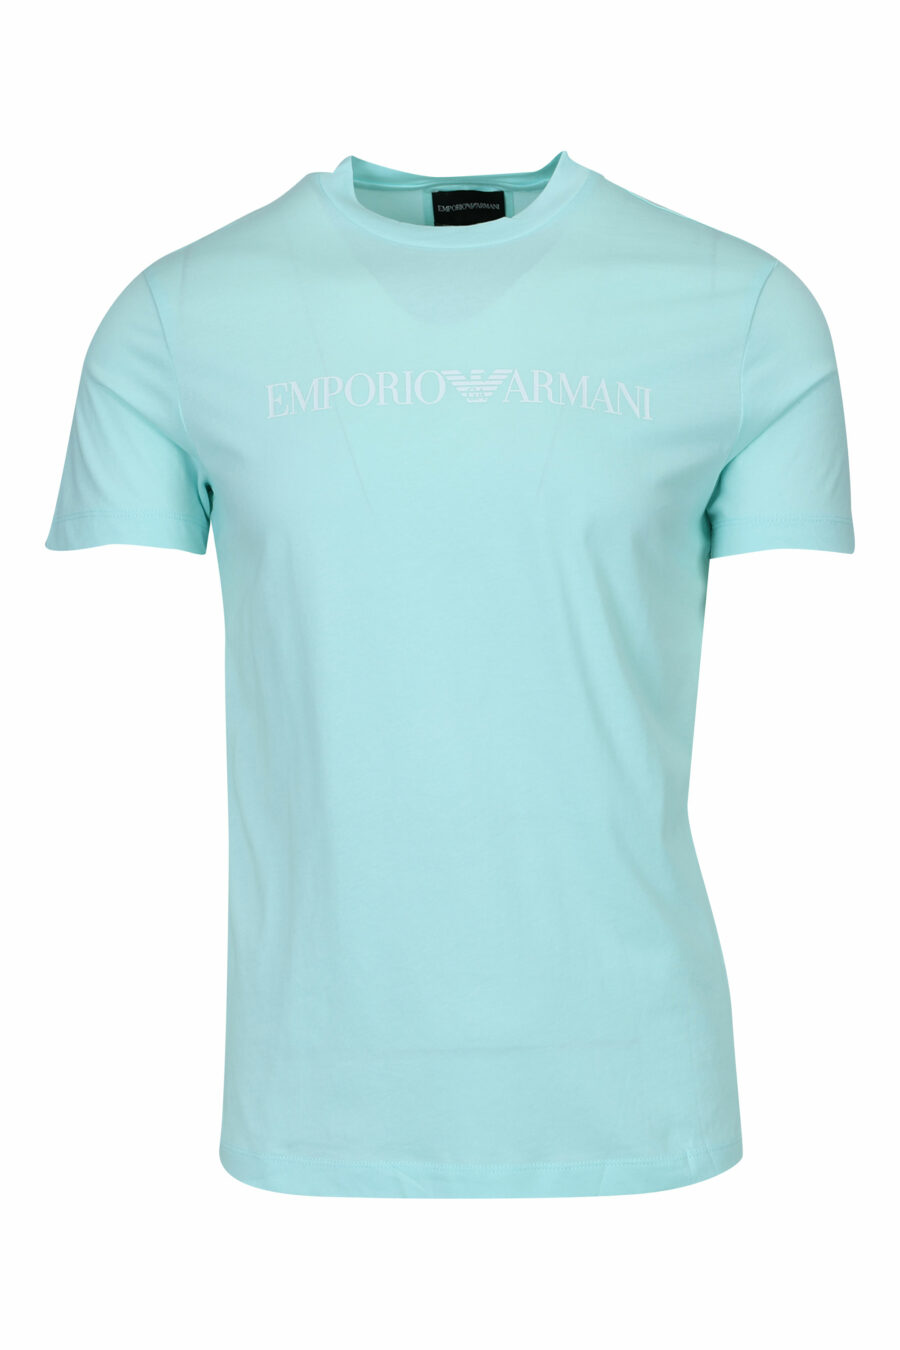 Camiseta azul cielo con maxilogo "emporio" - 8058997257701